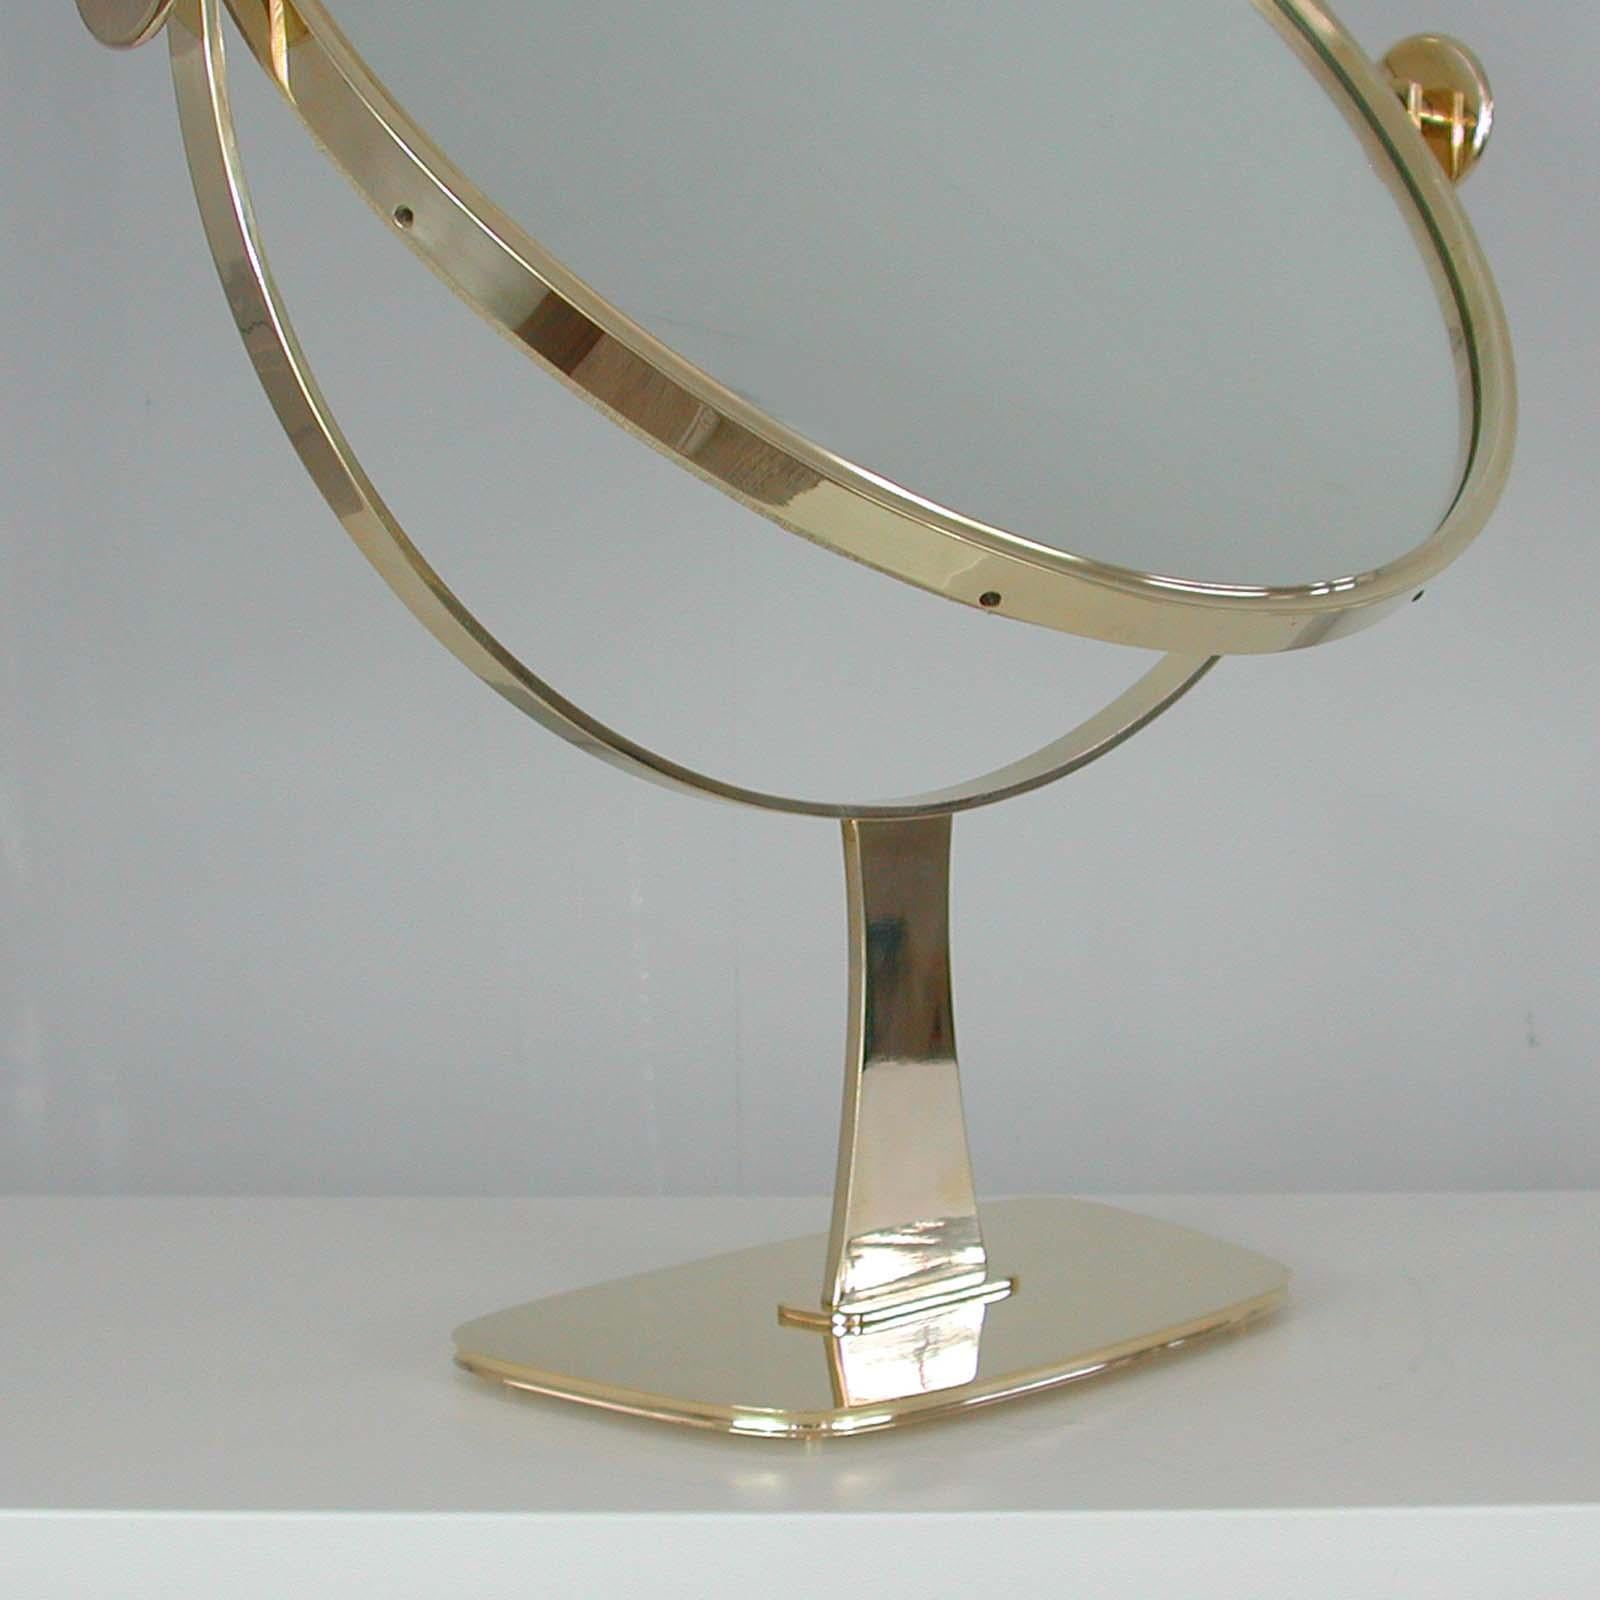 Midcentury German Brass Table Mirror by Vereinigte Werkstätten München, 1960s For Sale 3